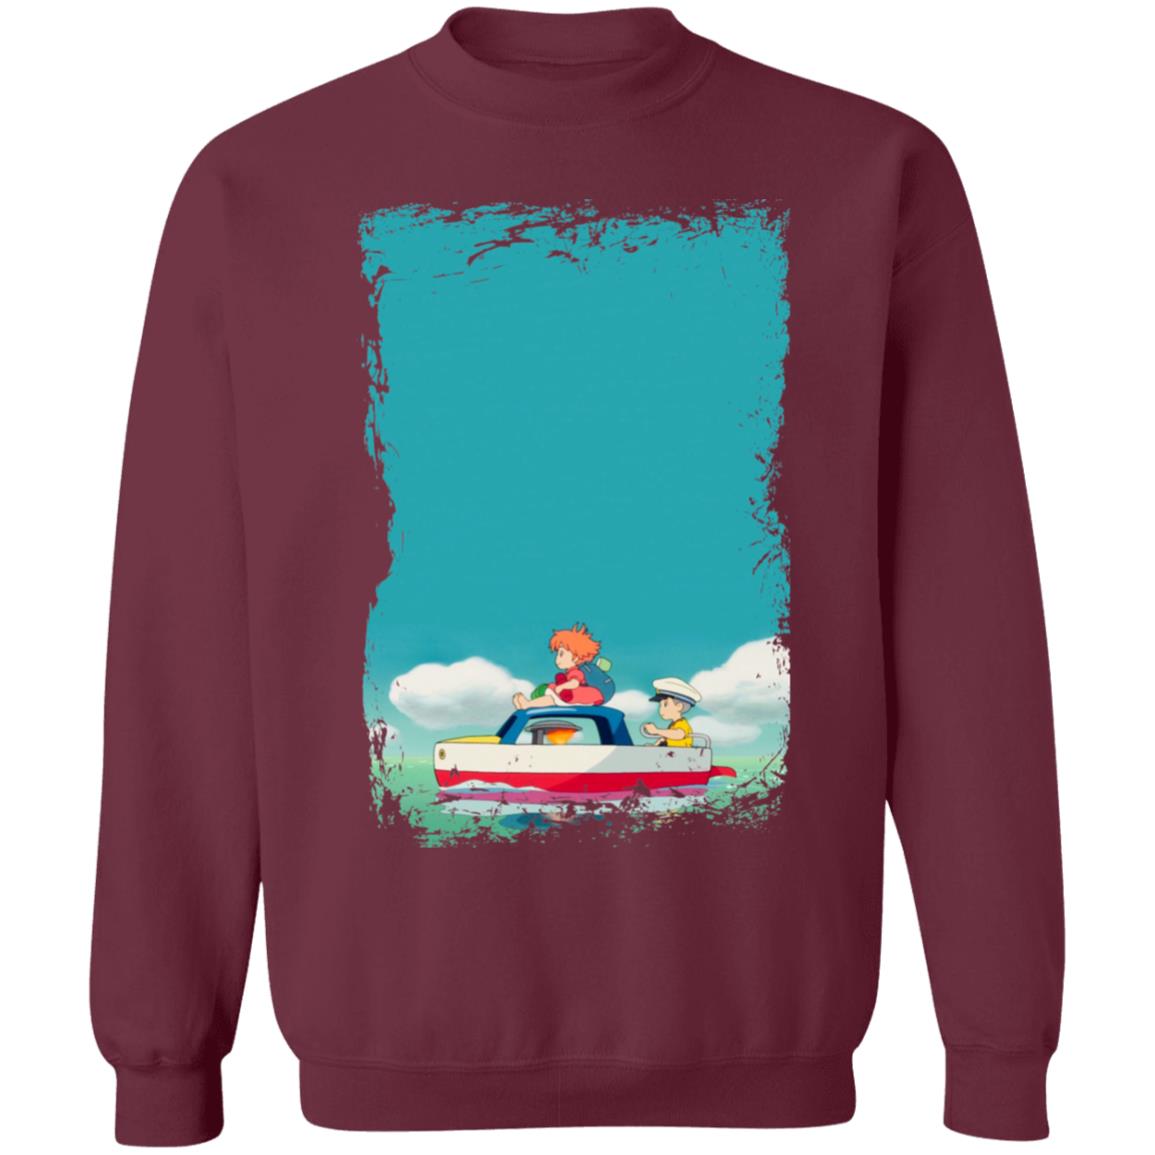 Ponyo and Sosuke on Boat Sweatshirt